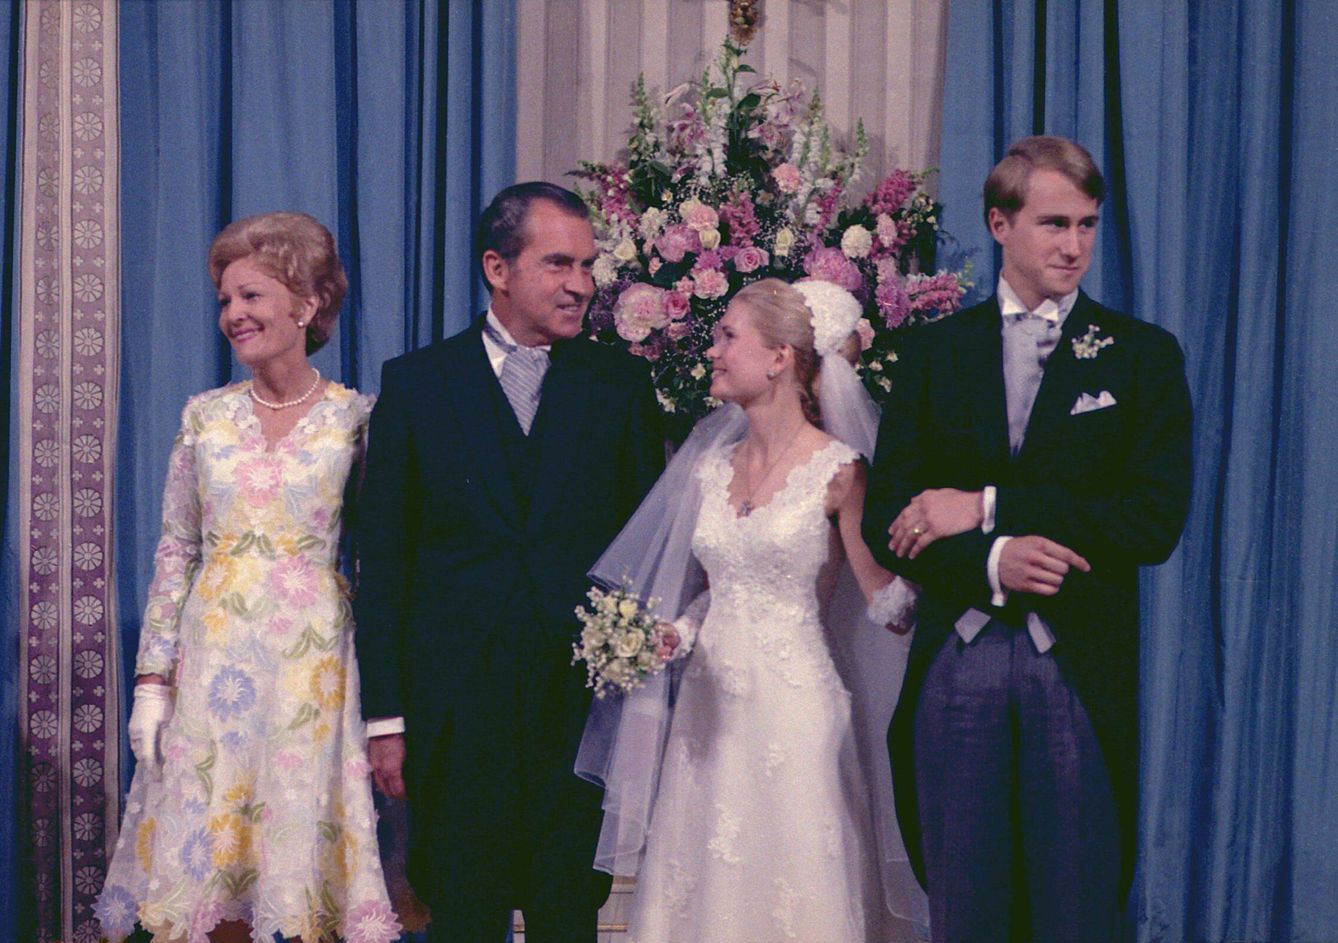 Pat y Richard Nixon, su hija Tricia y Ed Cox, en su boda en junio de 1971 en la Casa Blanca. (Cordon Press)